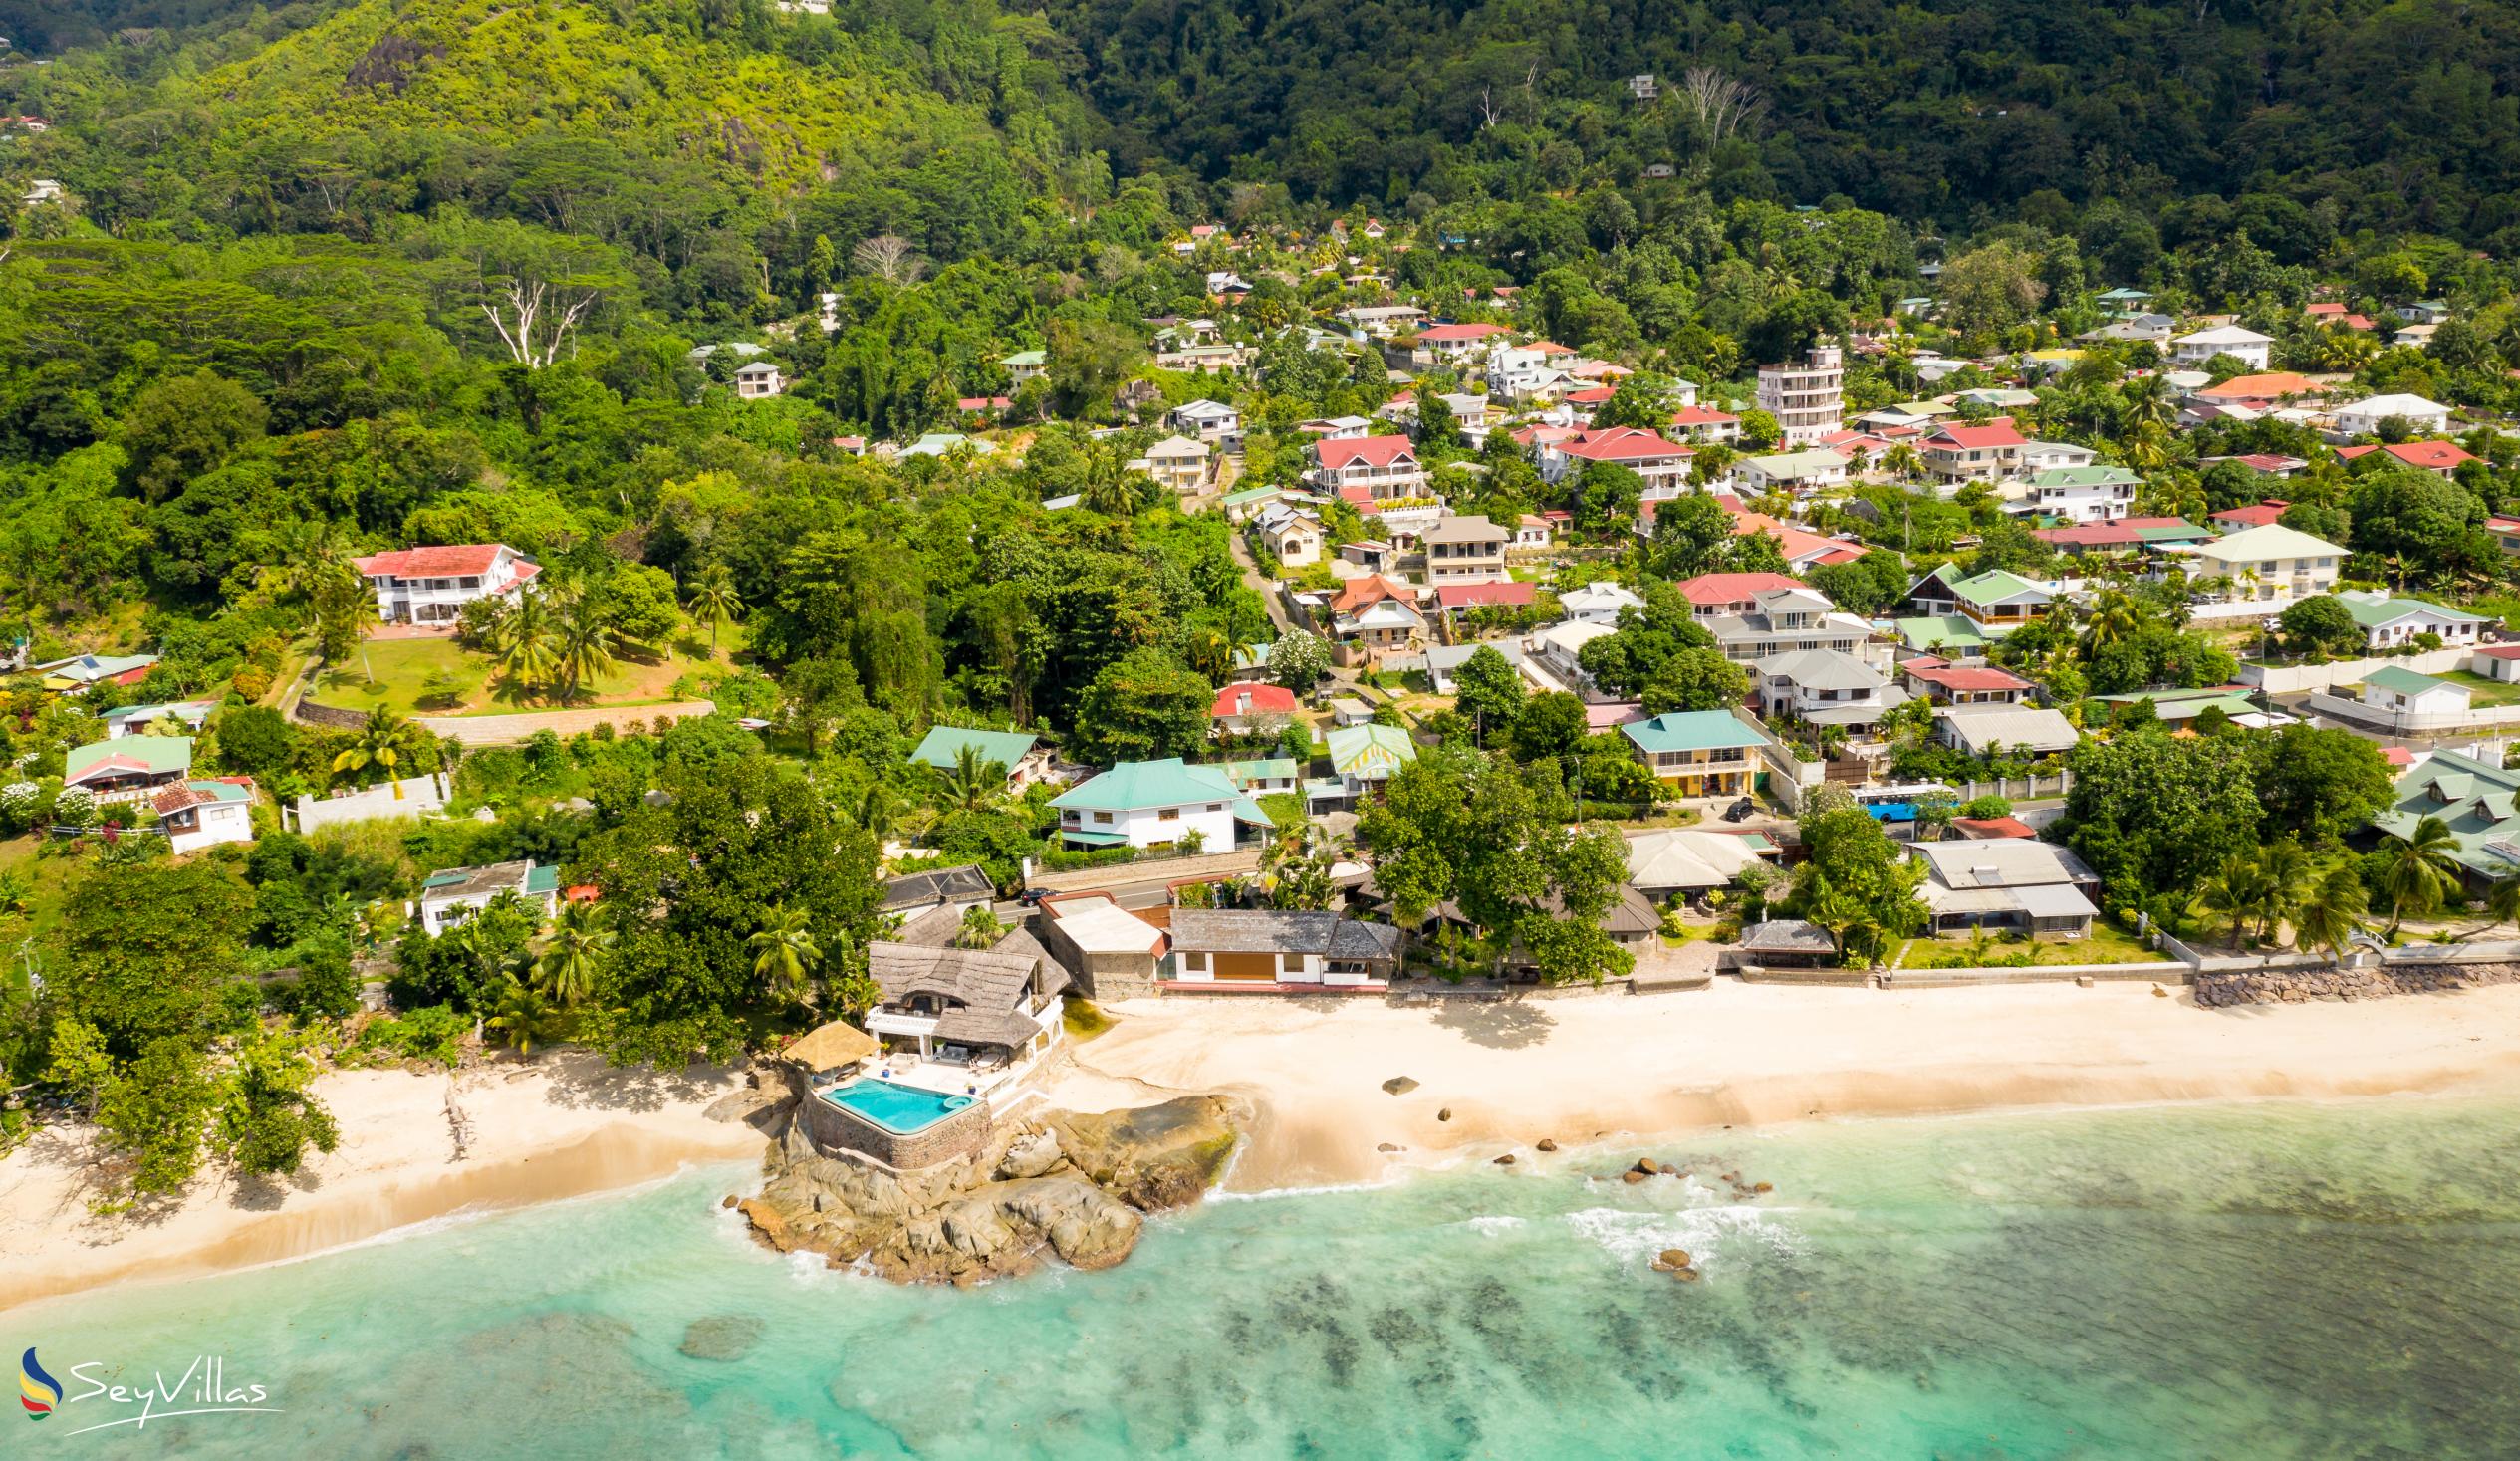 Foto 67: Villa Rousseau - Location - Mahé (Seychelles)